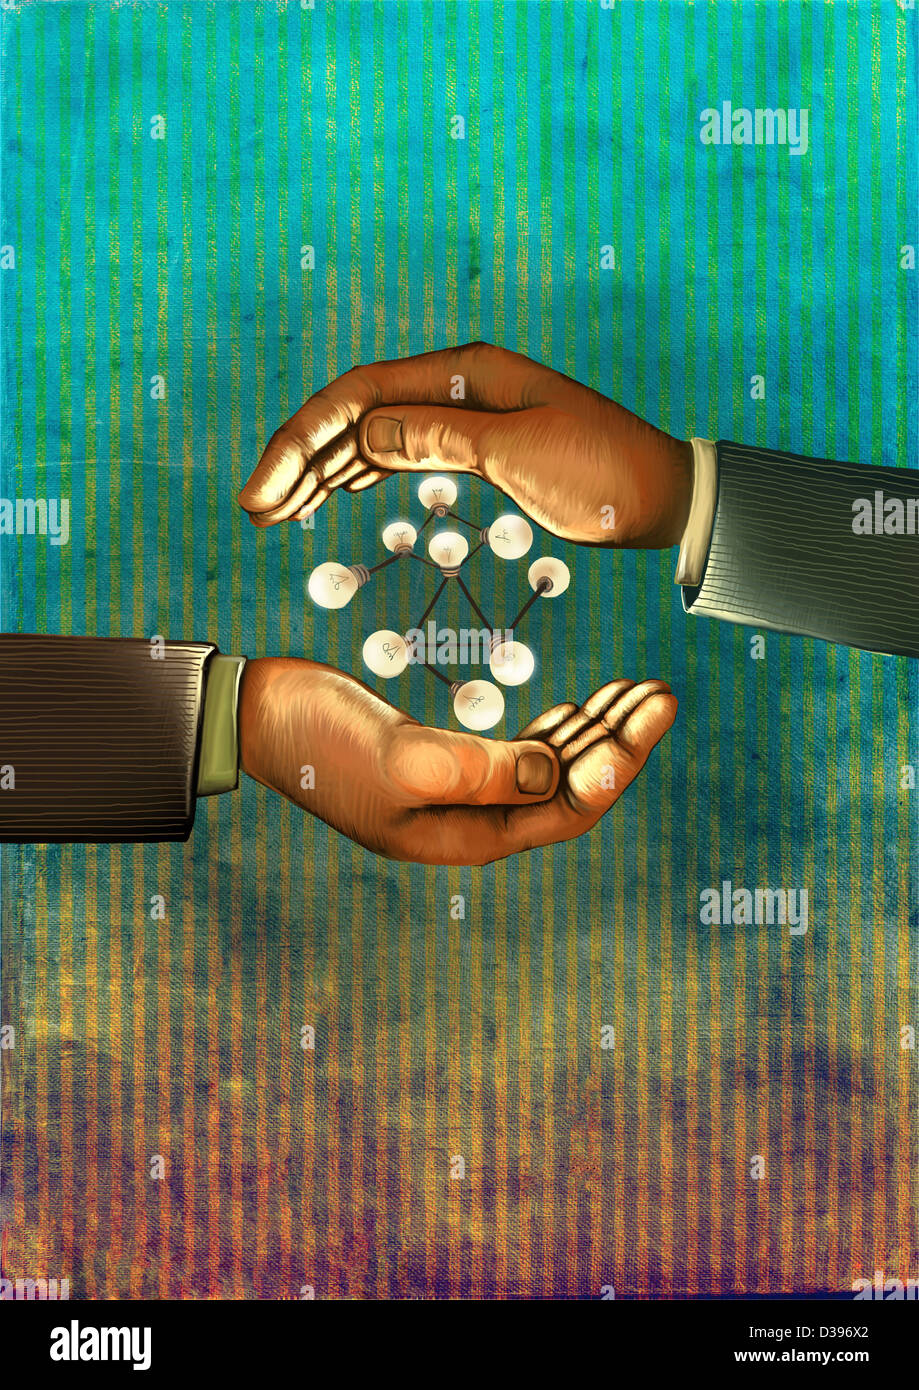 Image d'illustration de la main humaine avec ampoules dans atom structure représentant les réseaux d'affaires Banque D'Images